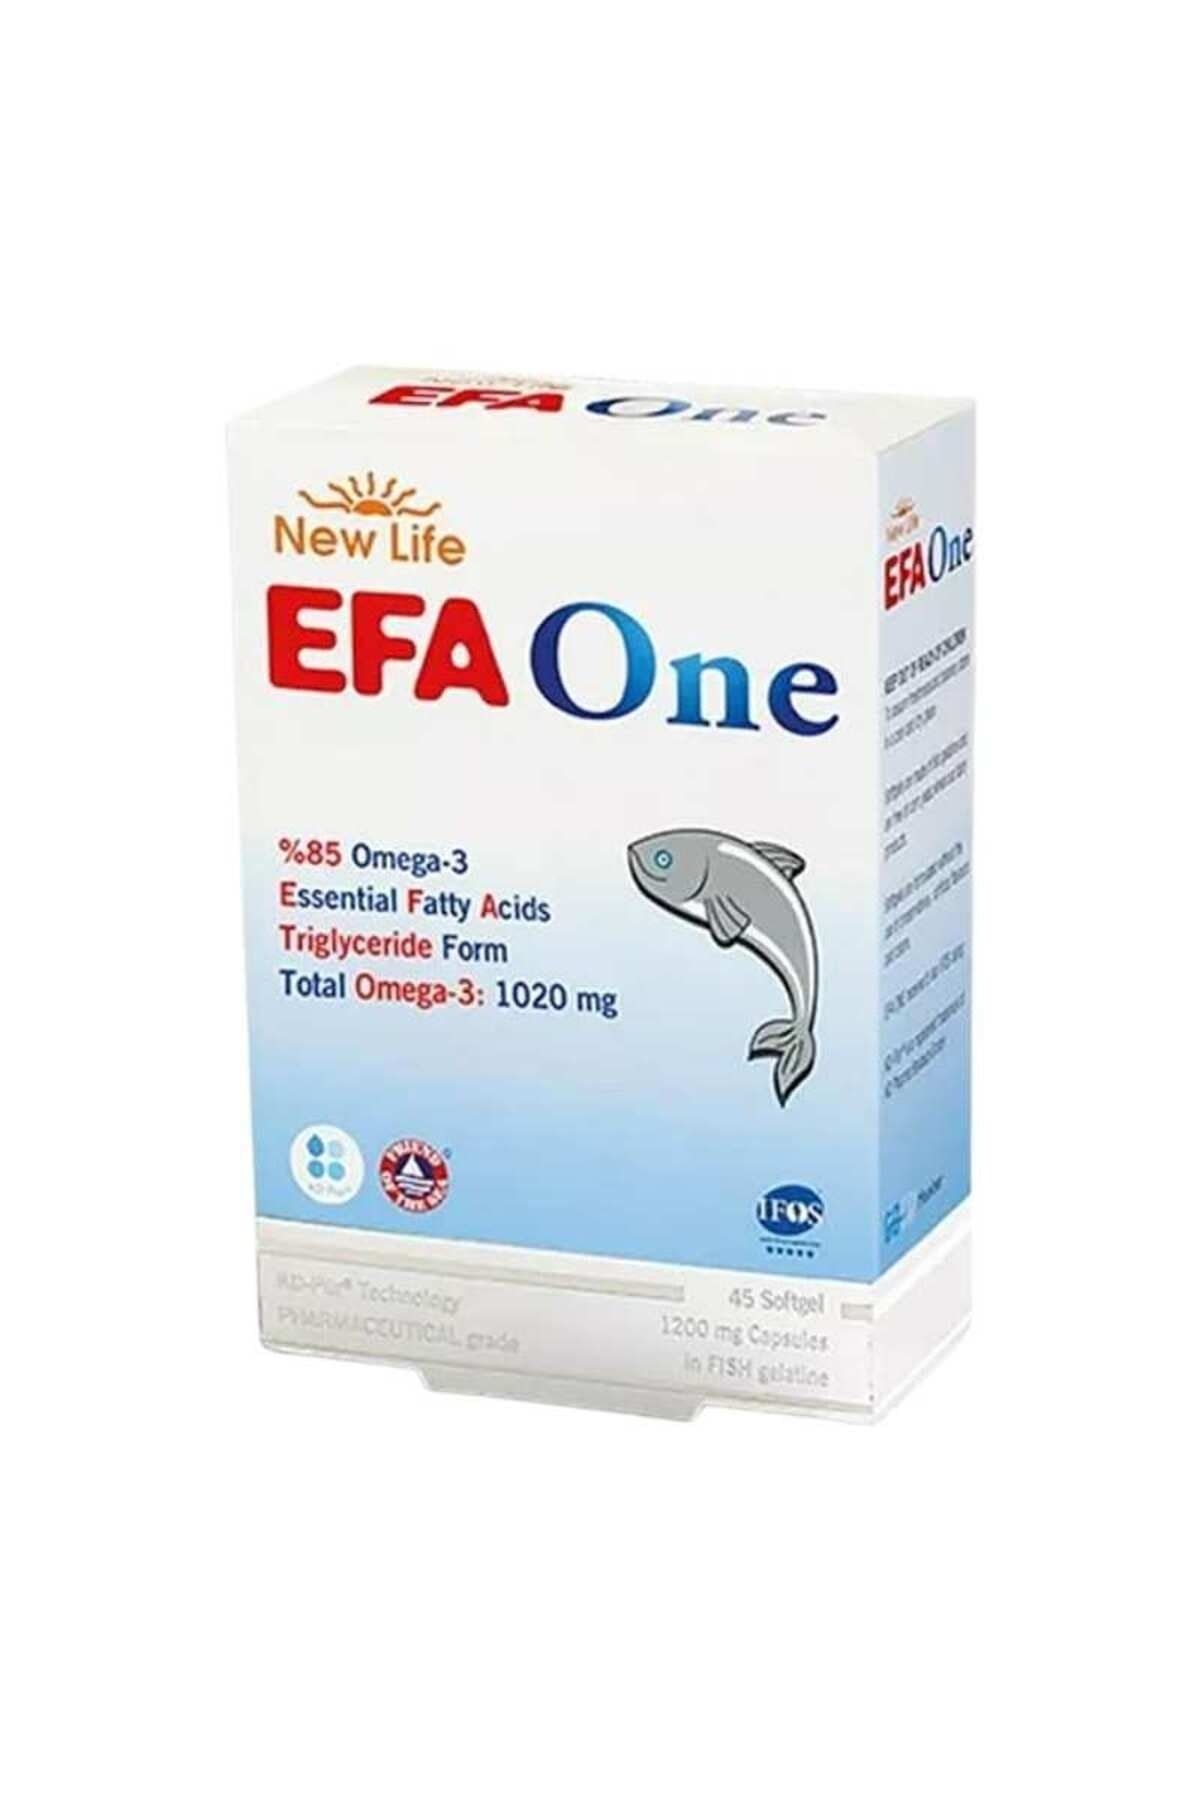 New Life Efa One Omega 3 Soft Jel 45 Capsul